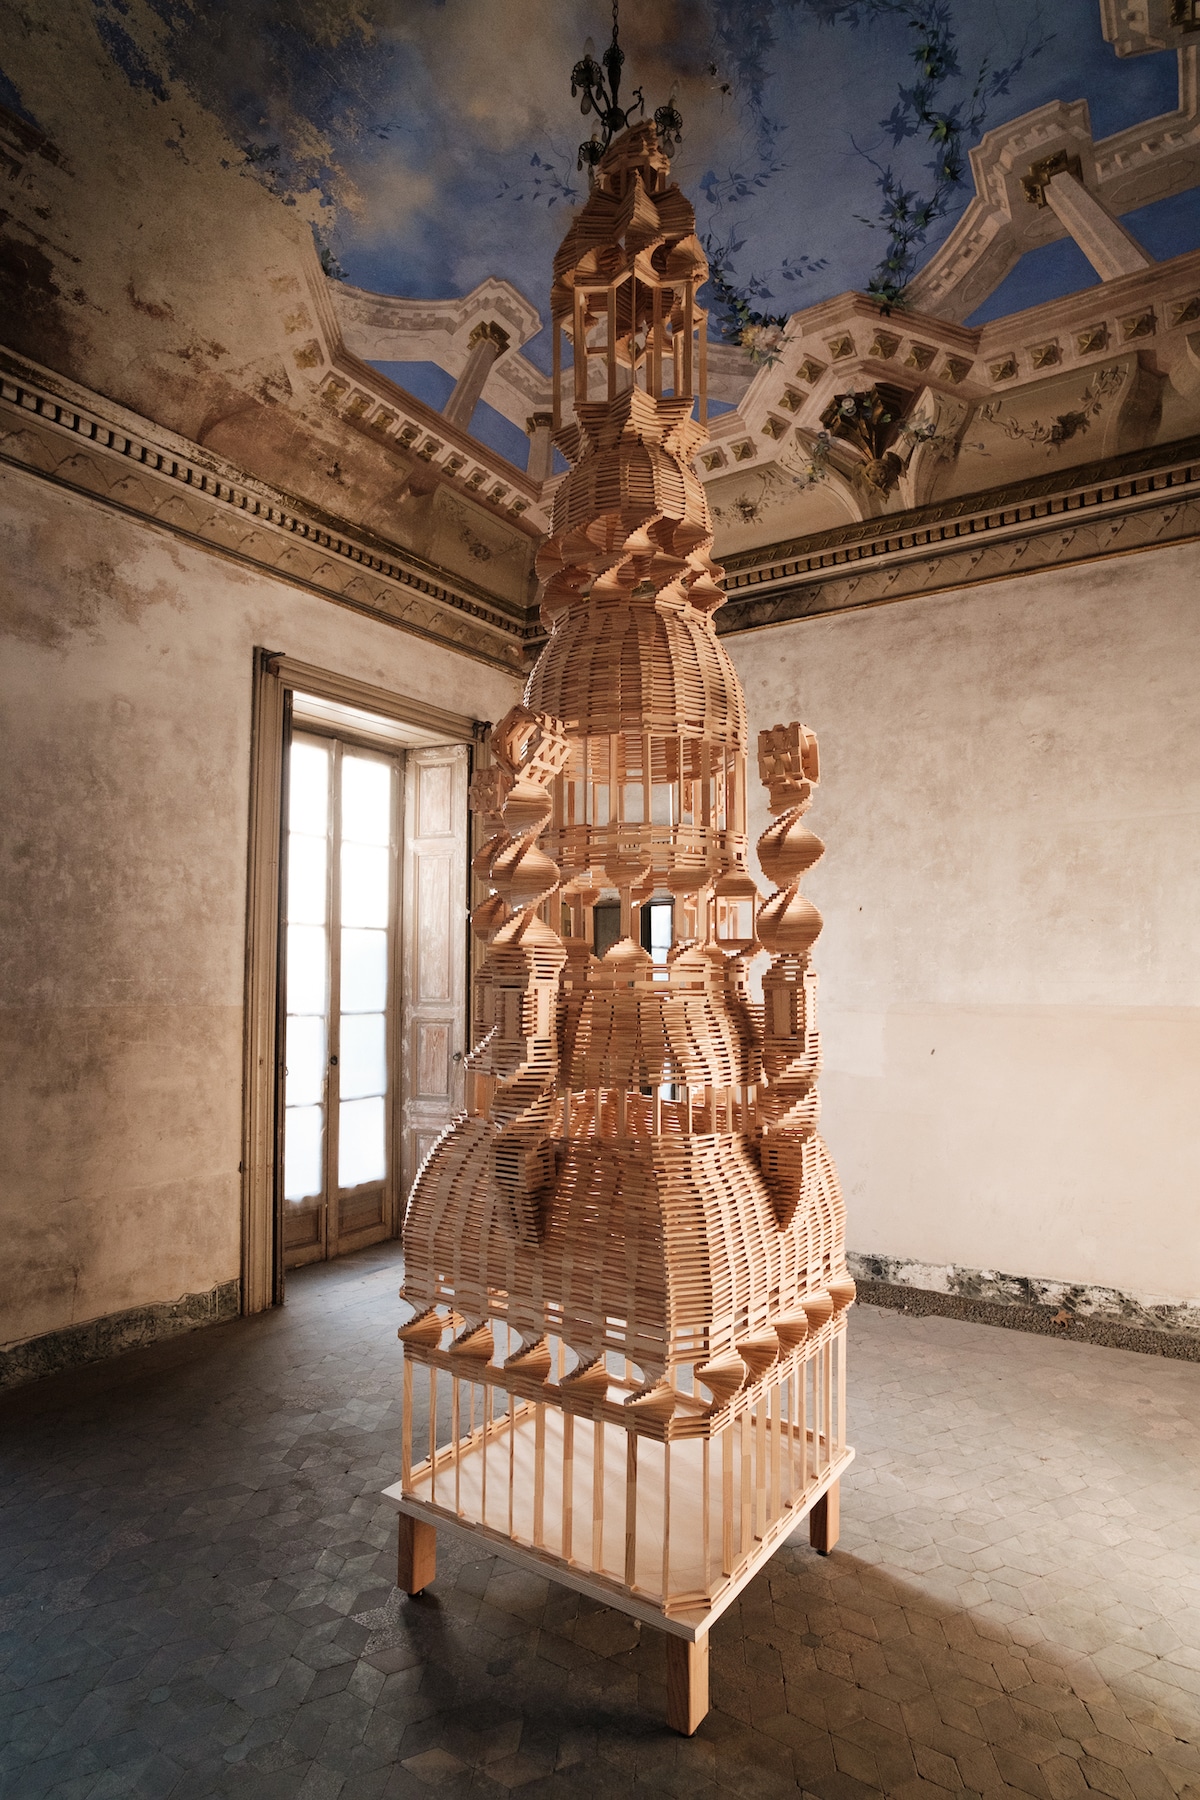 Wood Arc Sculpture by Raffaele Salvoldi